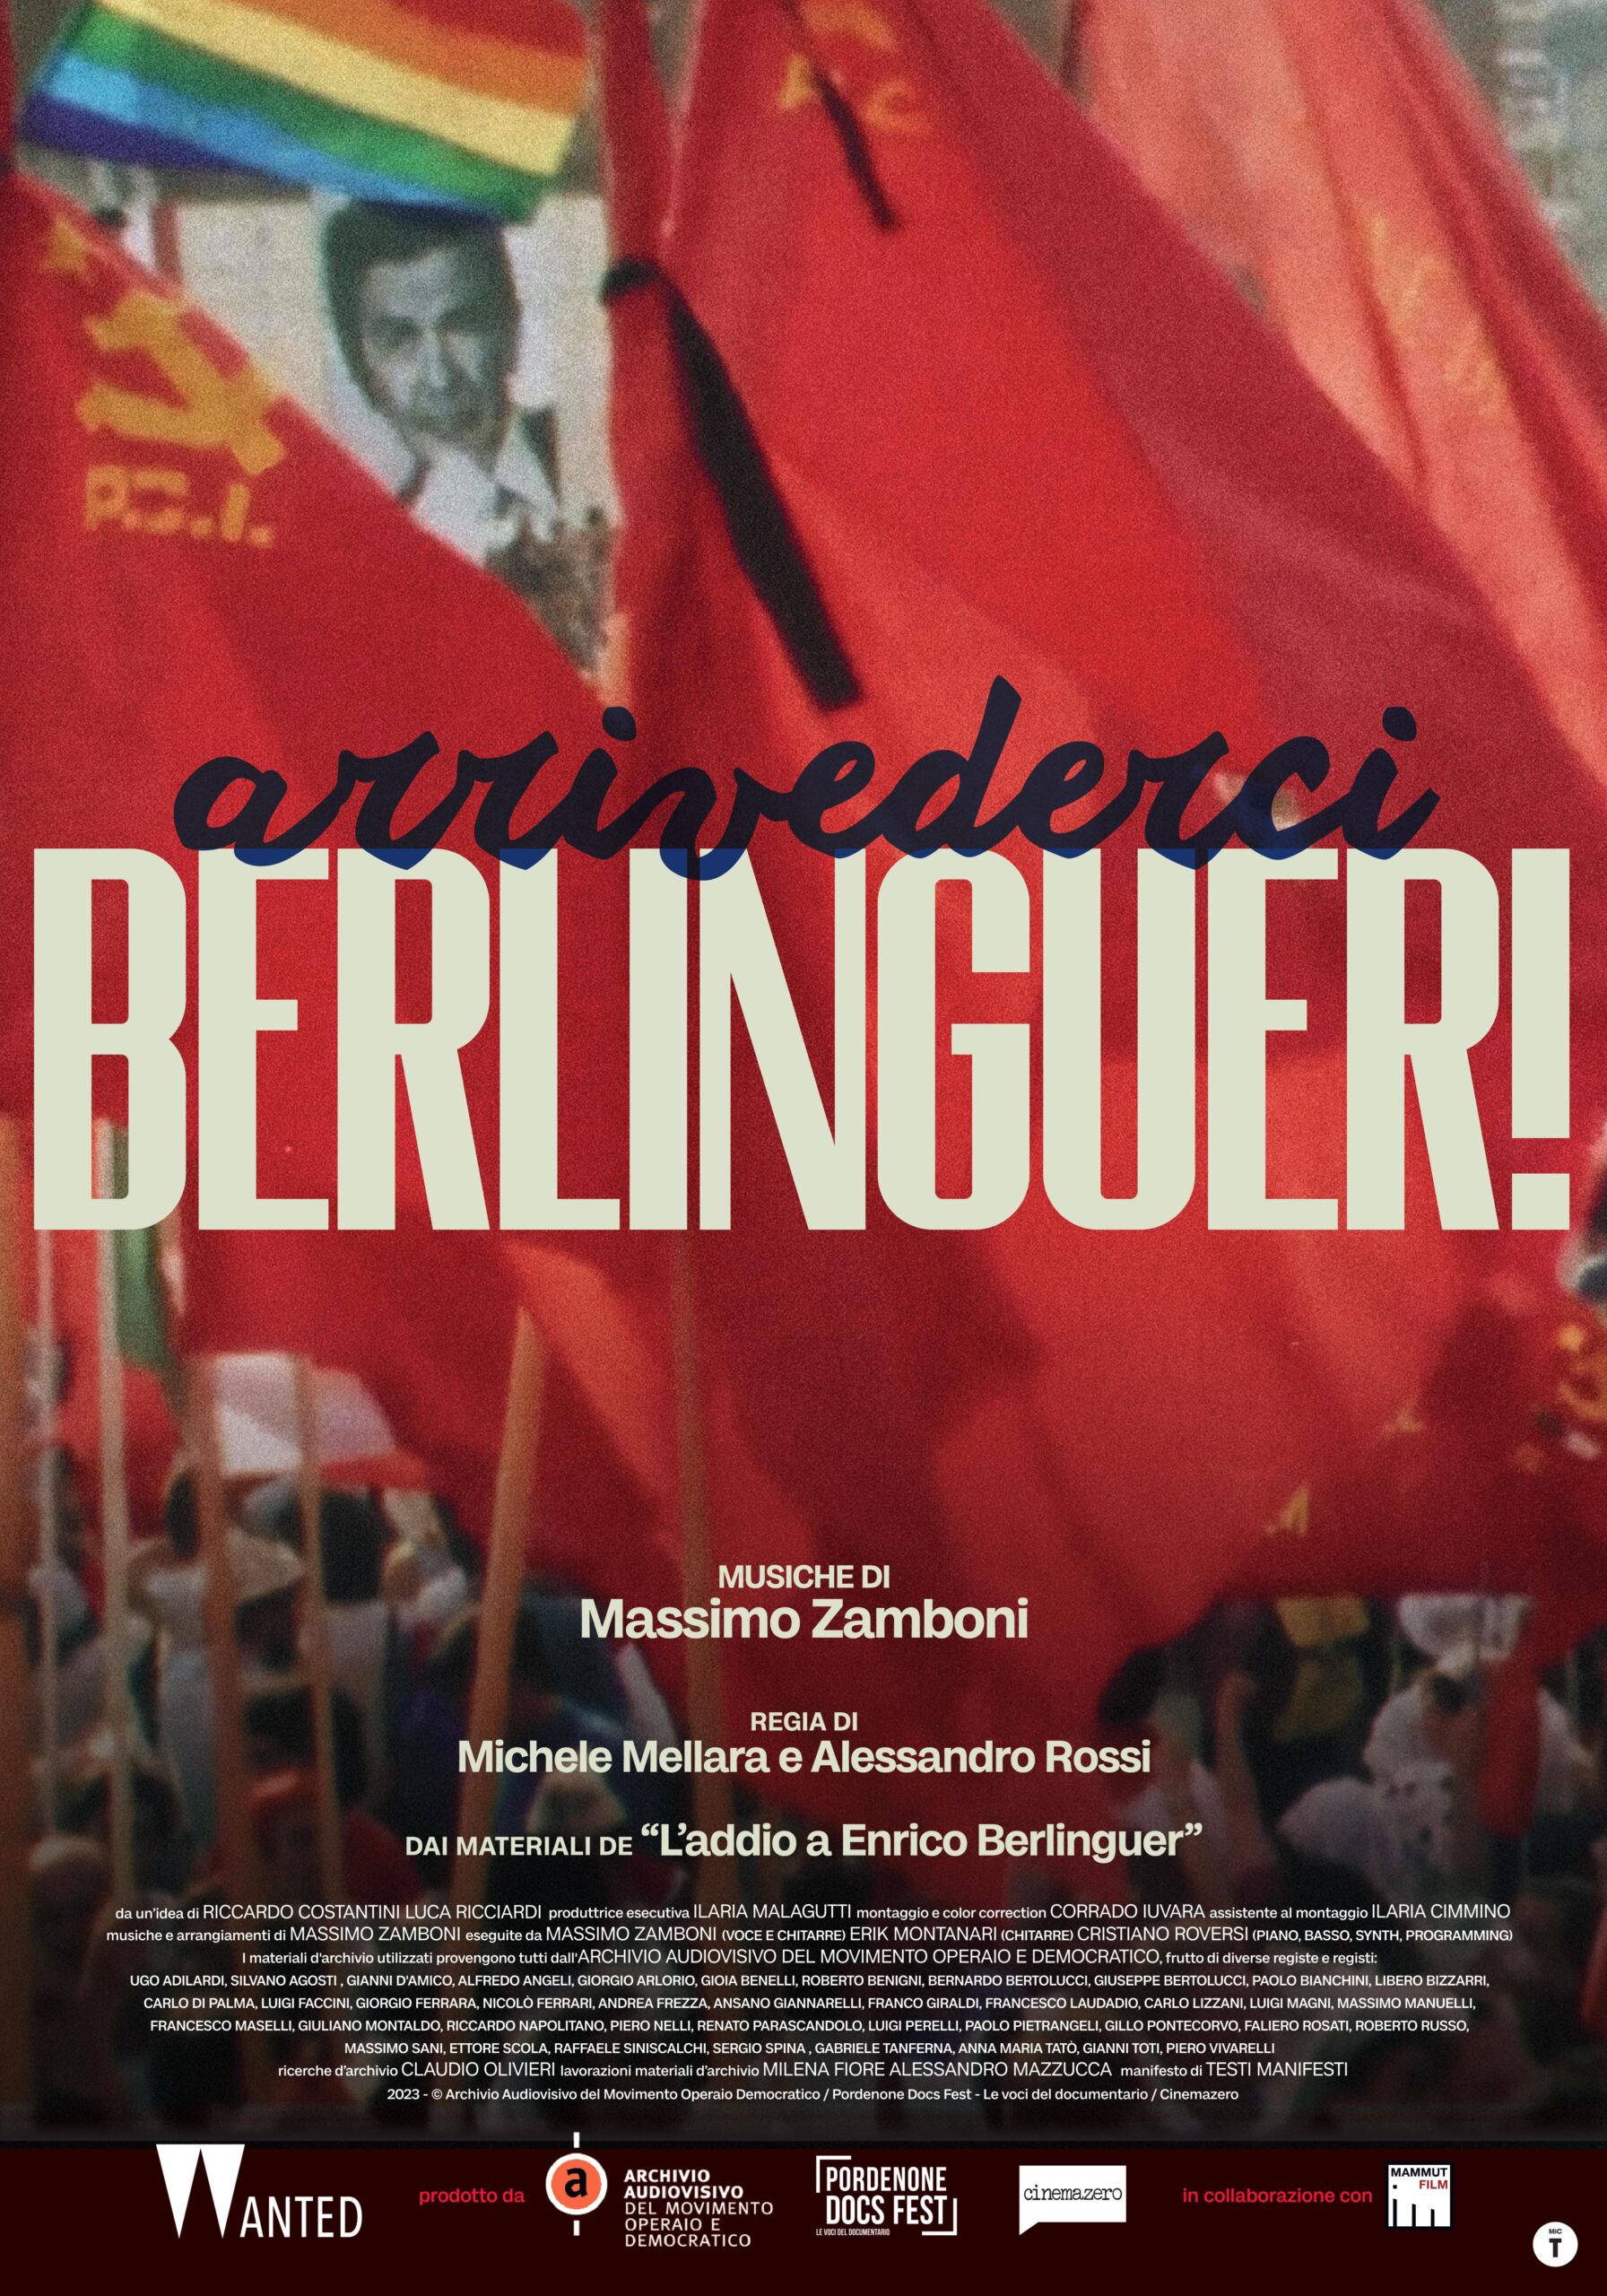 Arrivederci Berlinguer! Il 12 giugno due proiezioni speciali a Roma alla presenza di Massimo Zamboni